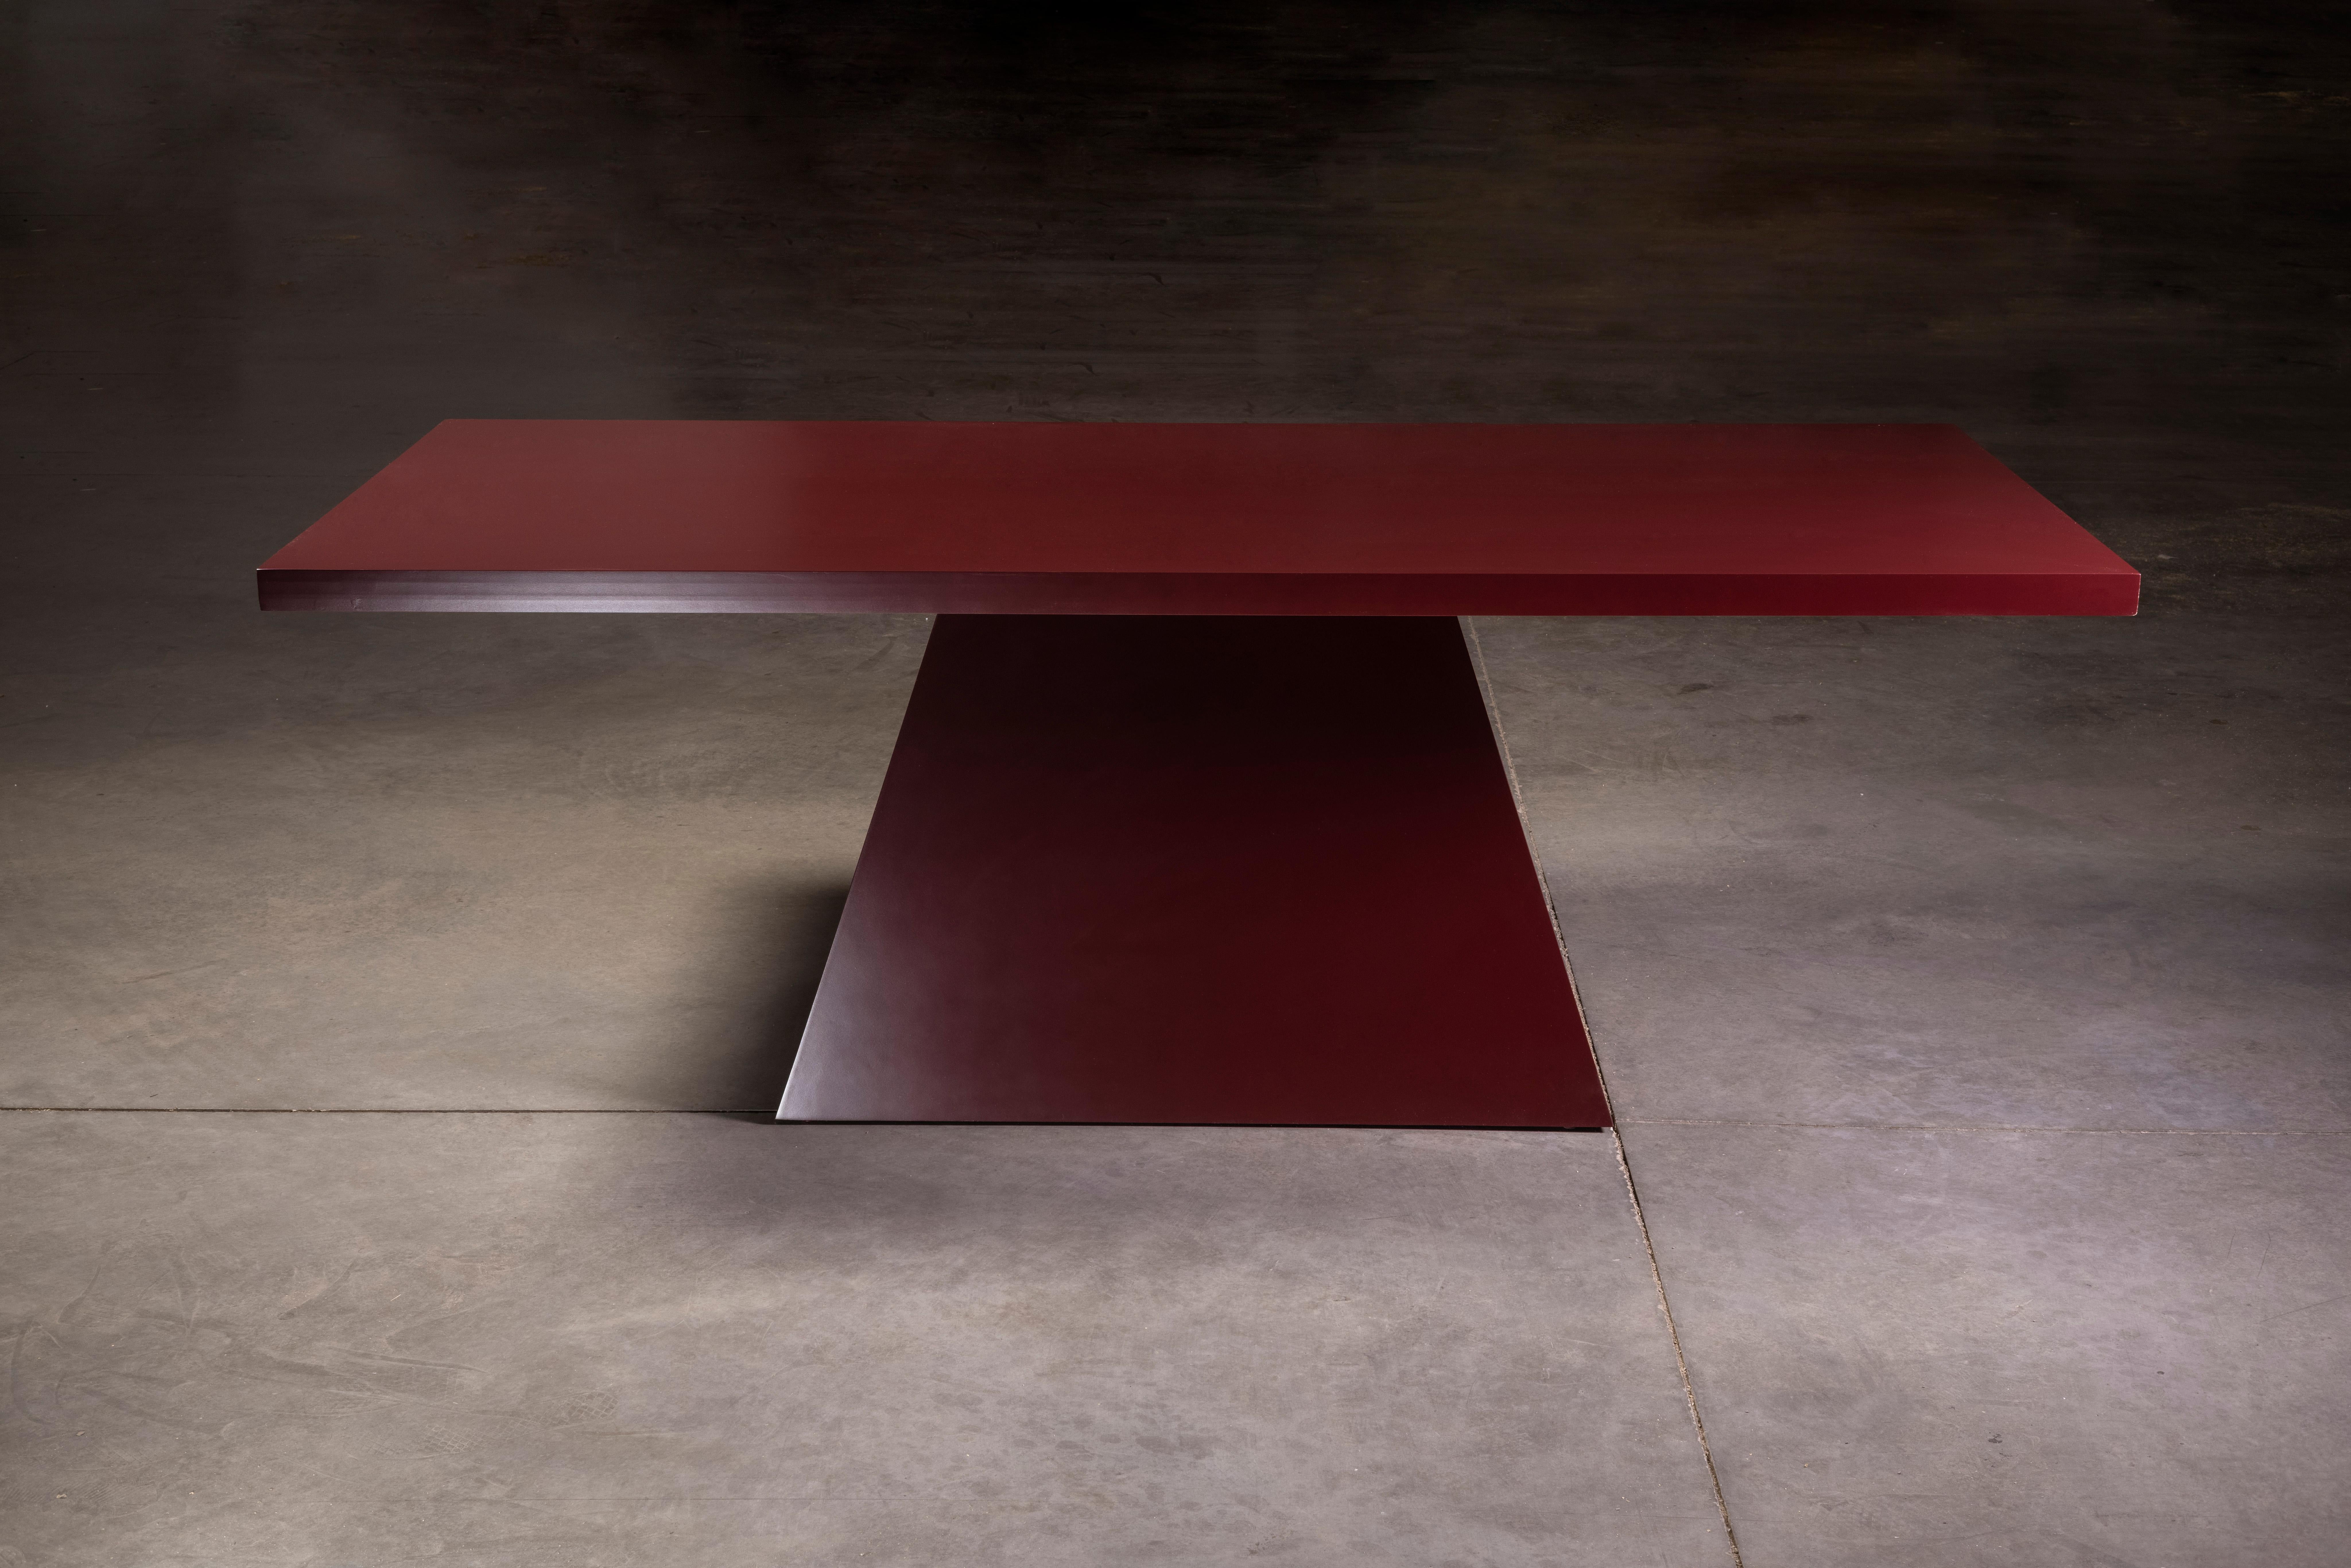 Mesa de comedor maciza, moderna y lacada, con acabado liso rojo oscuro y pedestal triangular.

Hecho a mano por artesanos mexicanos.

Inspirado en el movimiento Brutalista de los años 70.